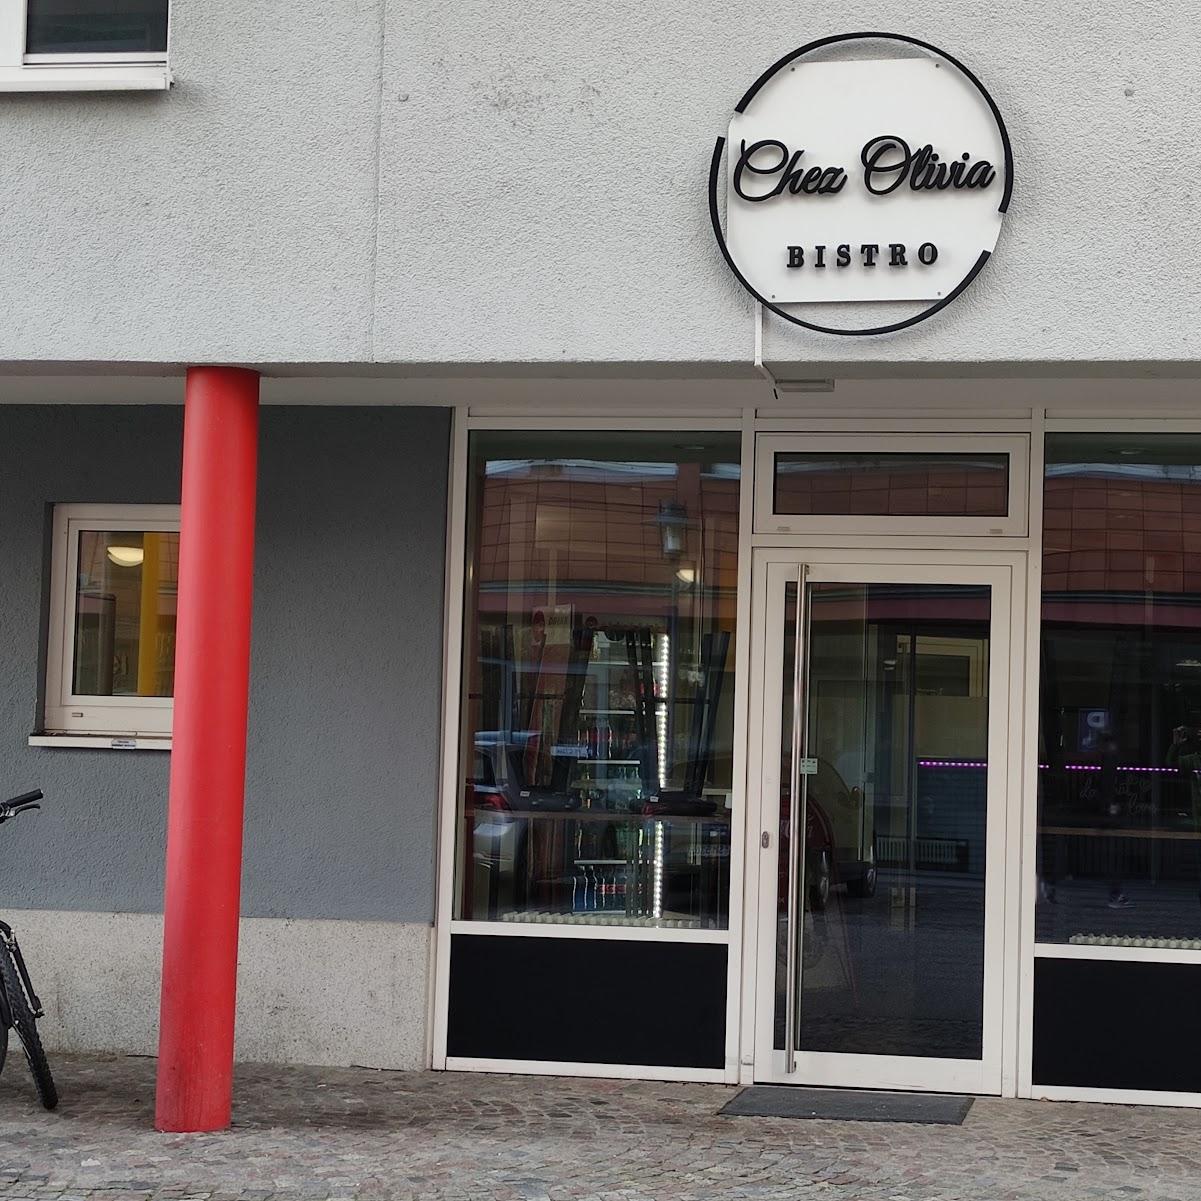 Restaurant "Chez Olivia Bistro" in Emmendingen